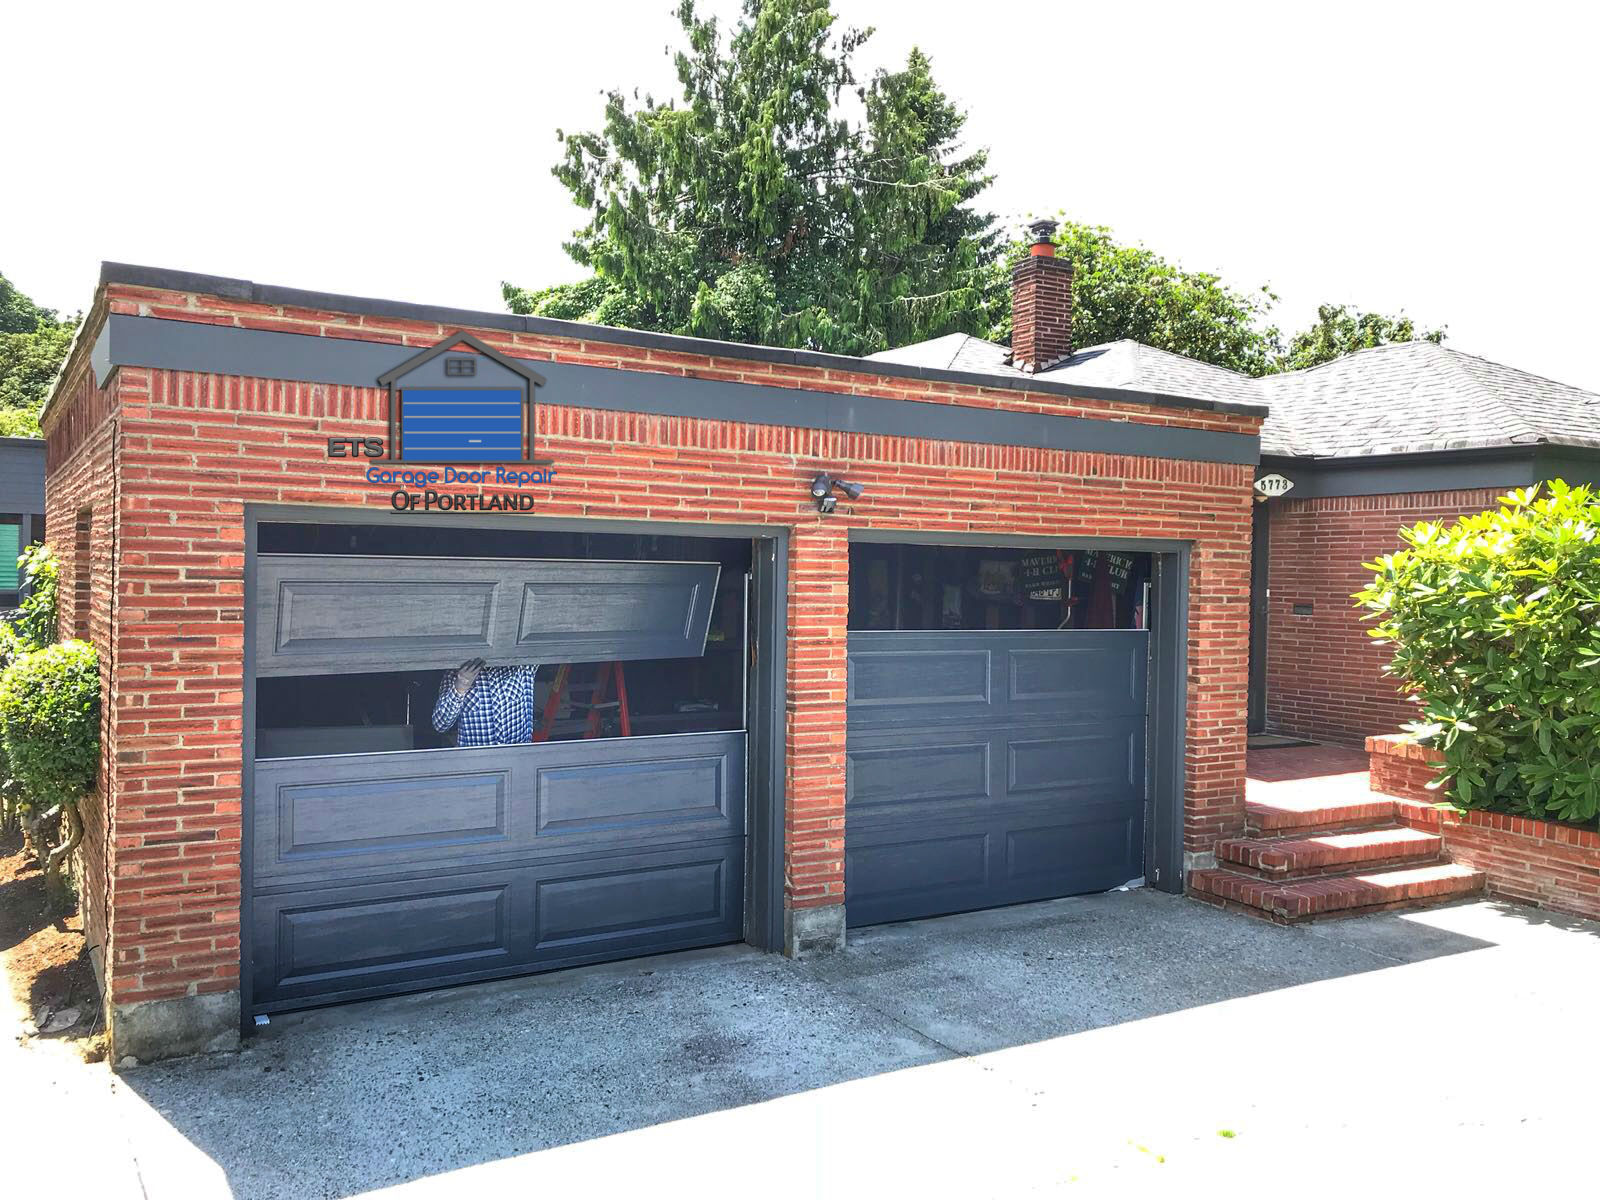 ETS Garage Door Repair Of Salem - Garage Door Repair & Installation Services10